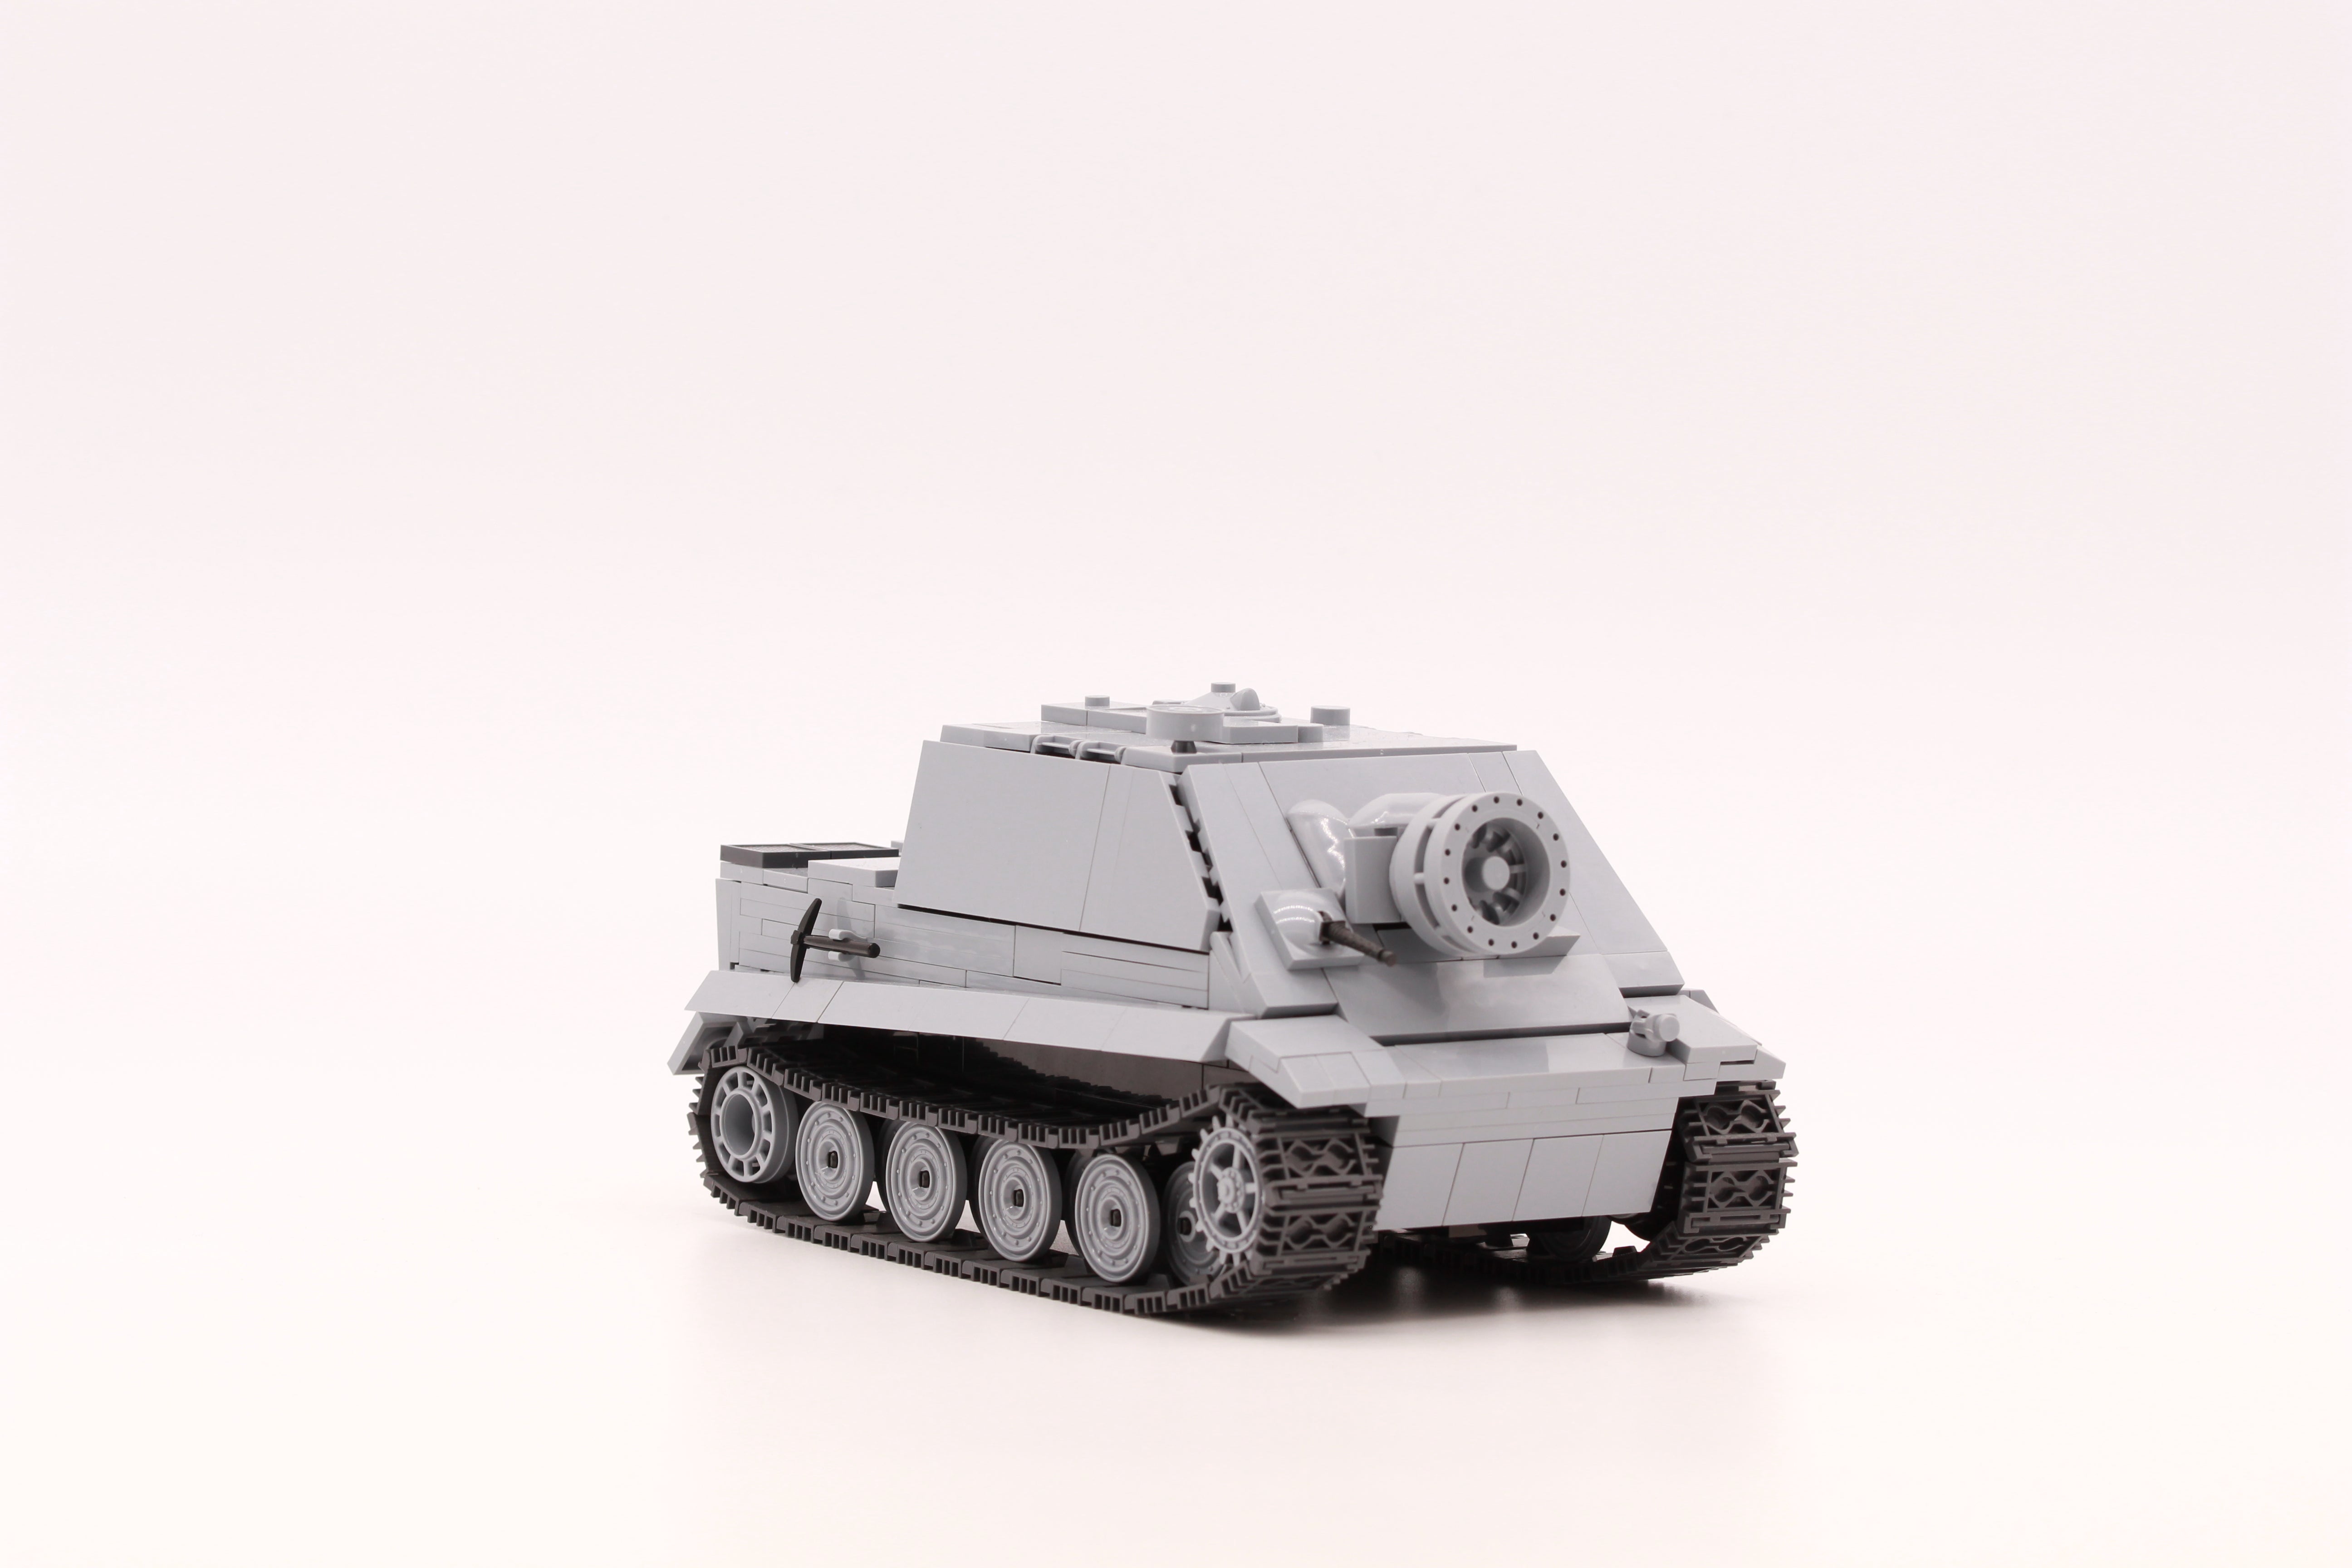 Sturmpanzer VI "Sturmtiger grau